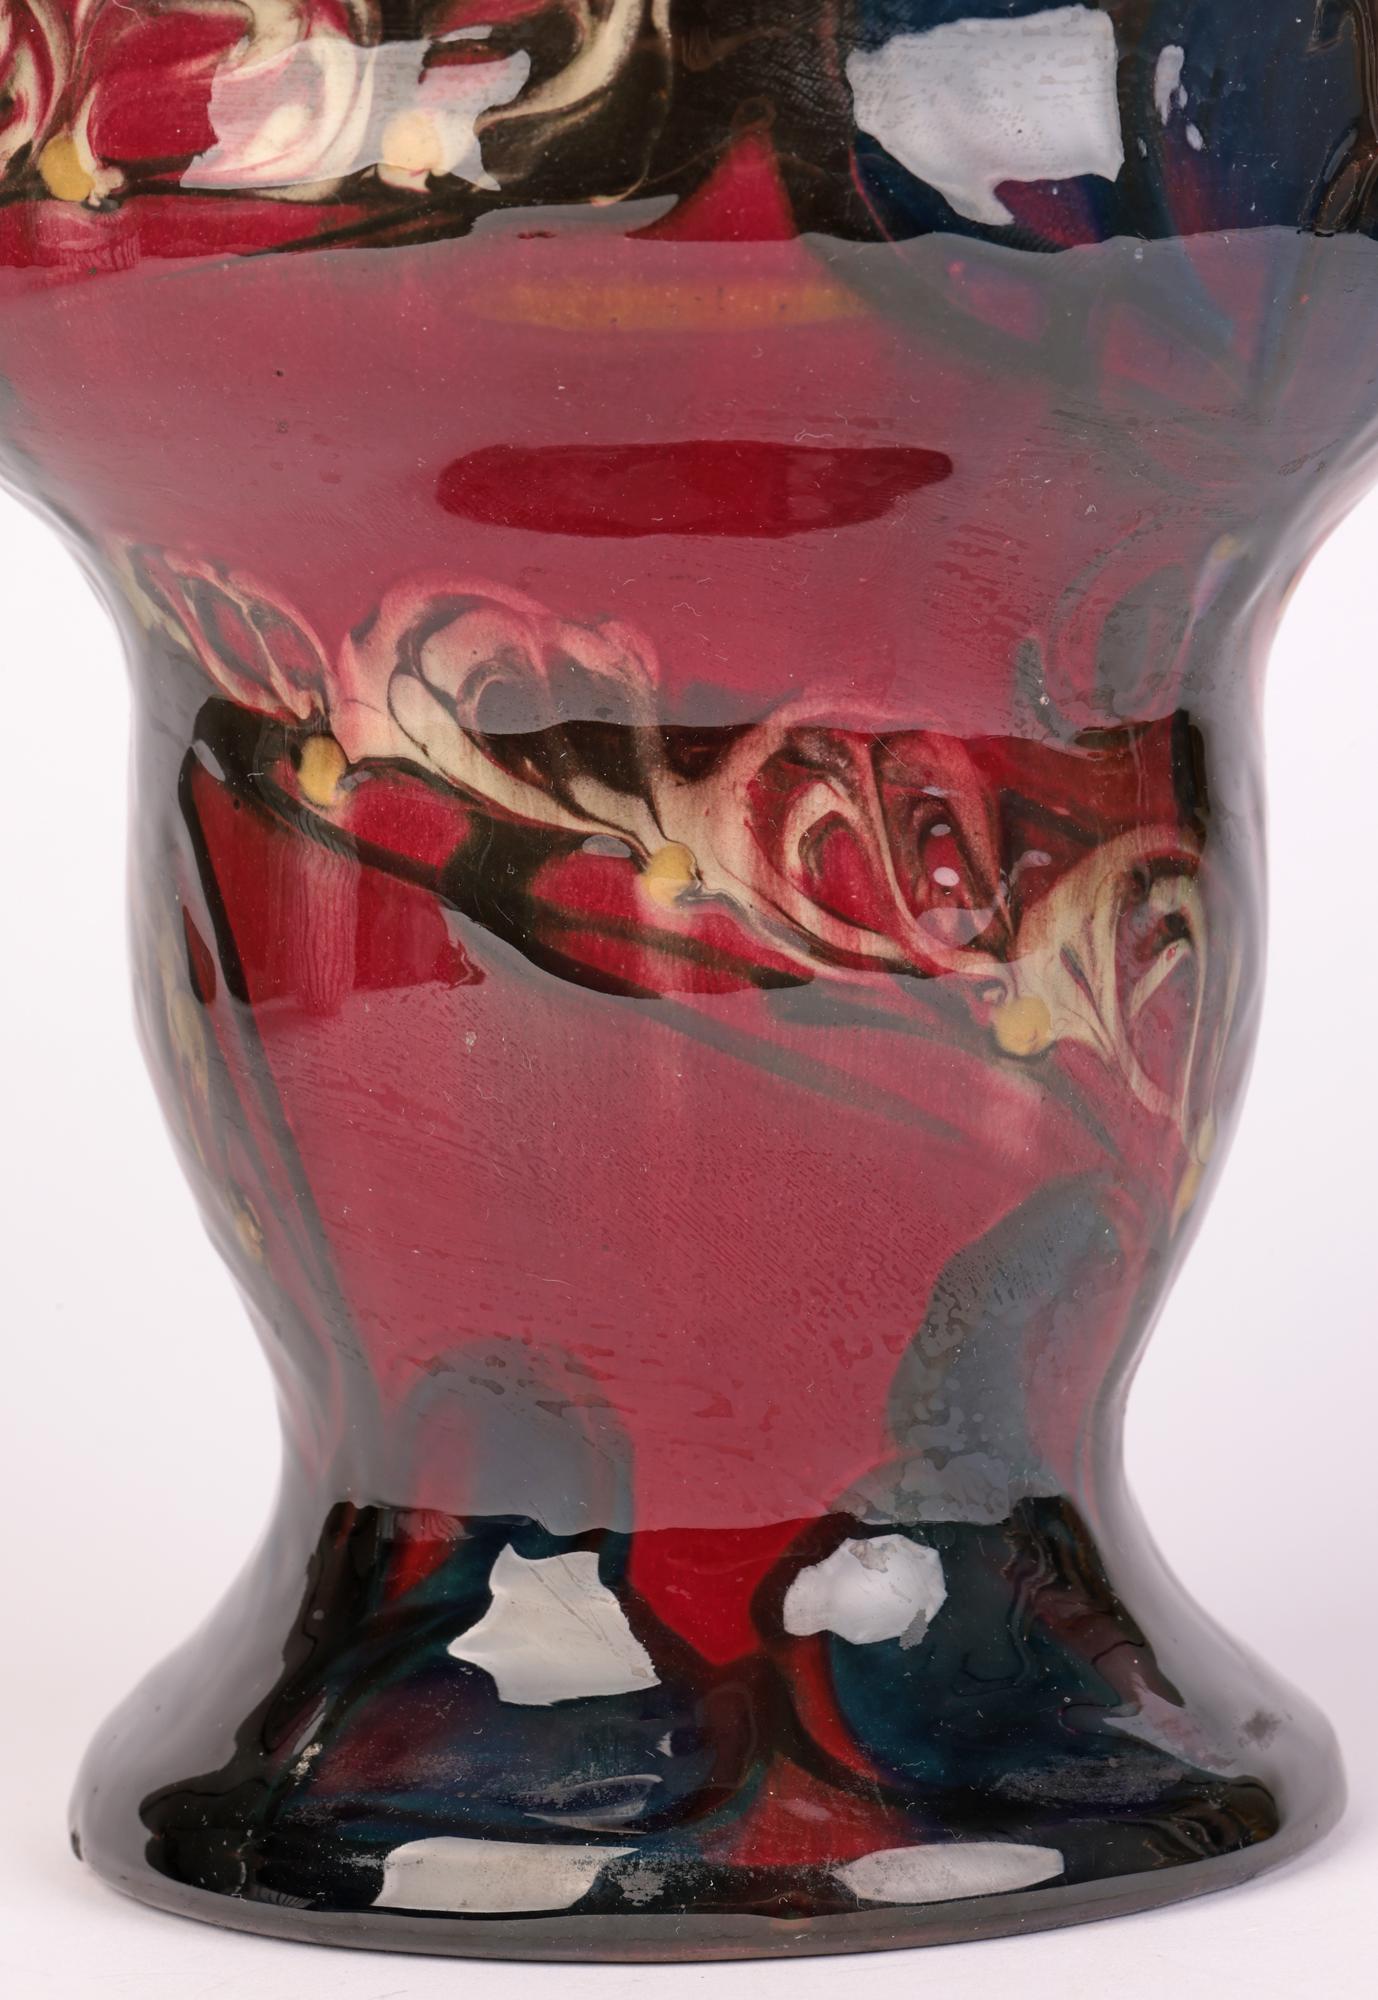 Exceptionnel et rare vase danois Art Nouveau abstrait à décor floral stylisé, réalisé par Eiler Londal pour Danico et datant de 1900 à 1929. On pense qu'il s'agit d'un exemple précoce. Ce vase de forme élégante et inhabituelle repose sur une large